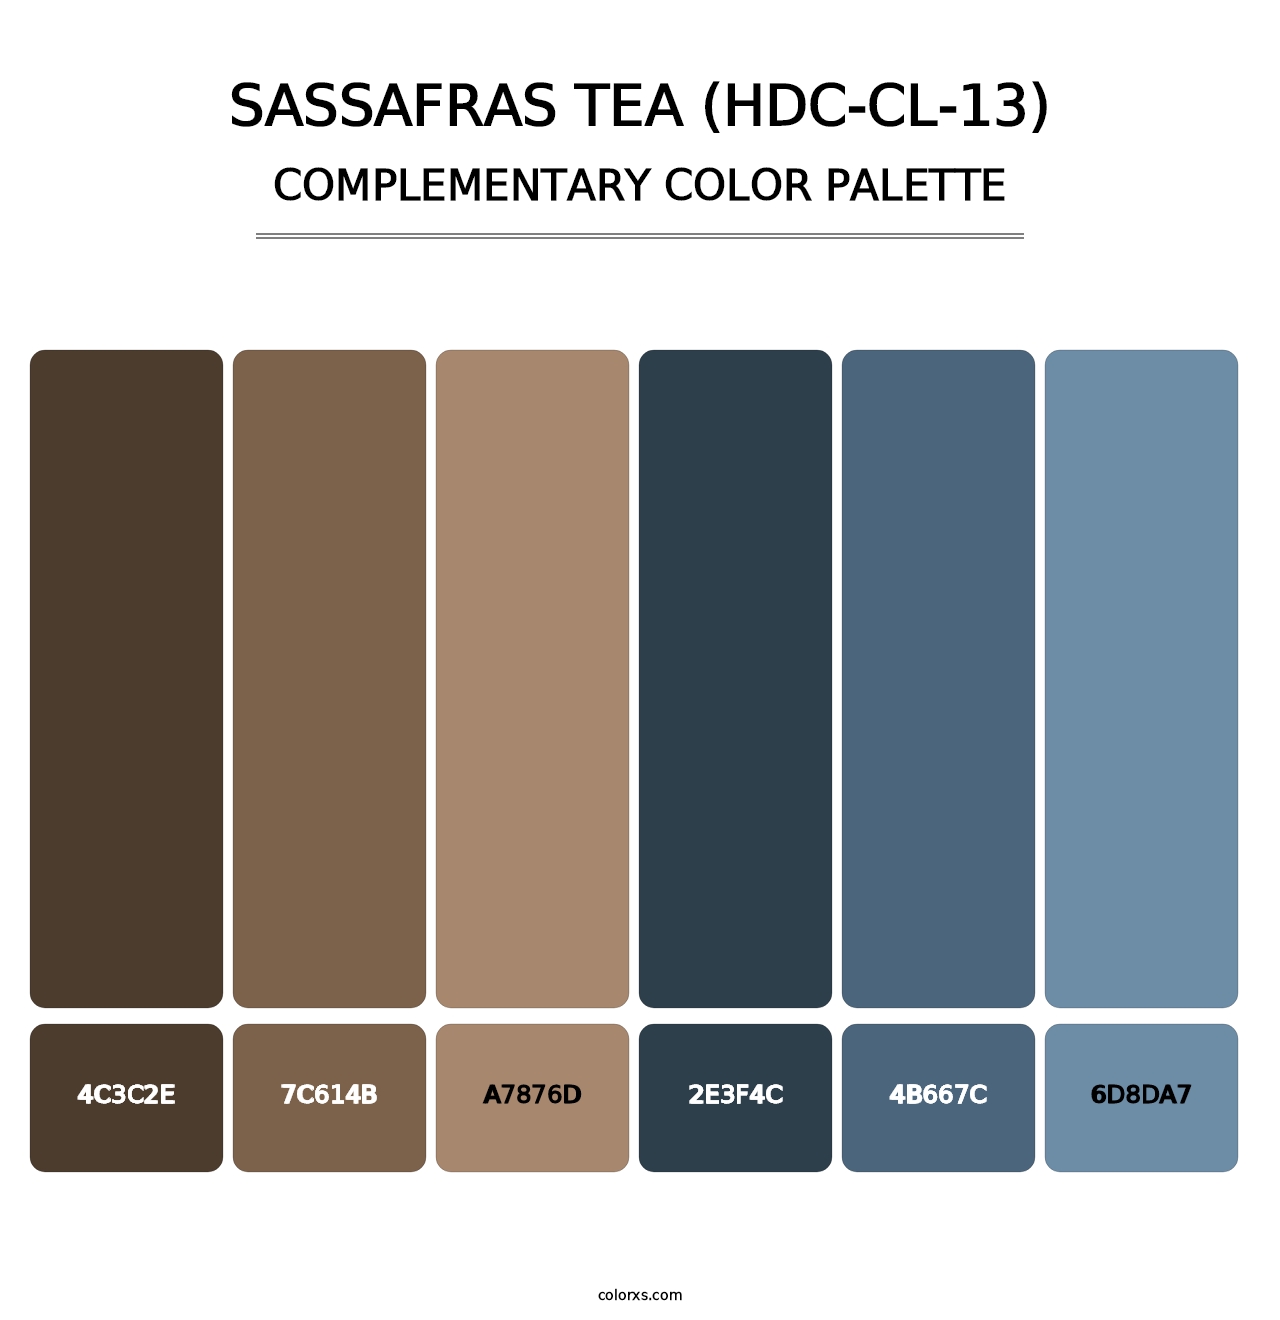 Sassafras Tea (HDC-CL-13) - Complementary Color Palette